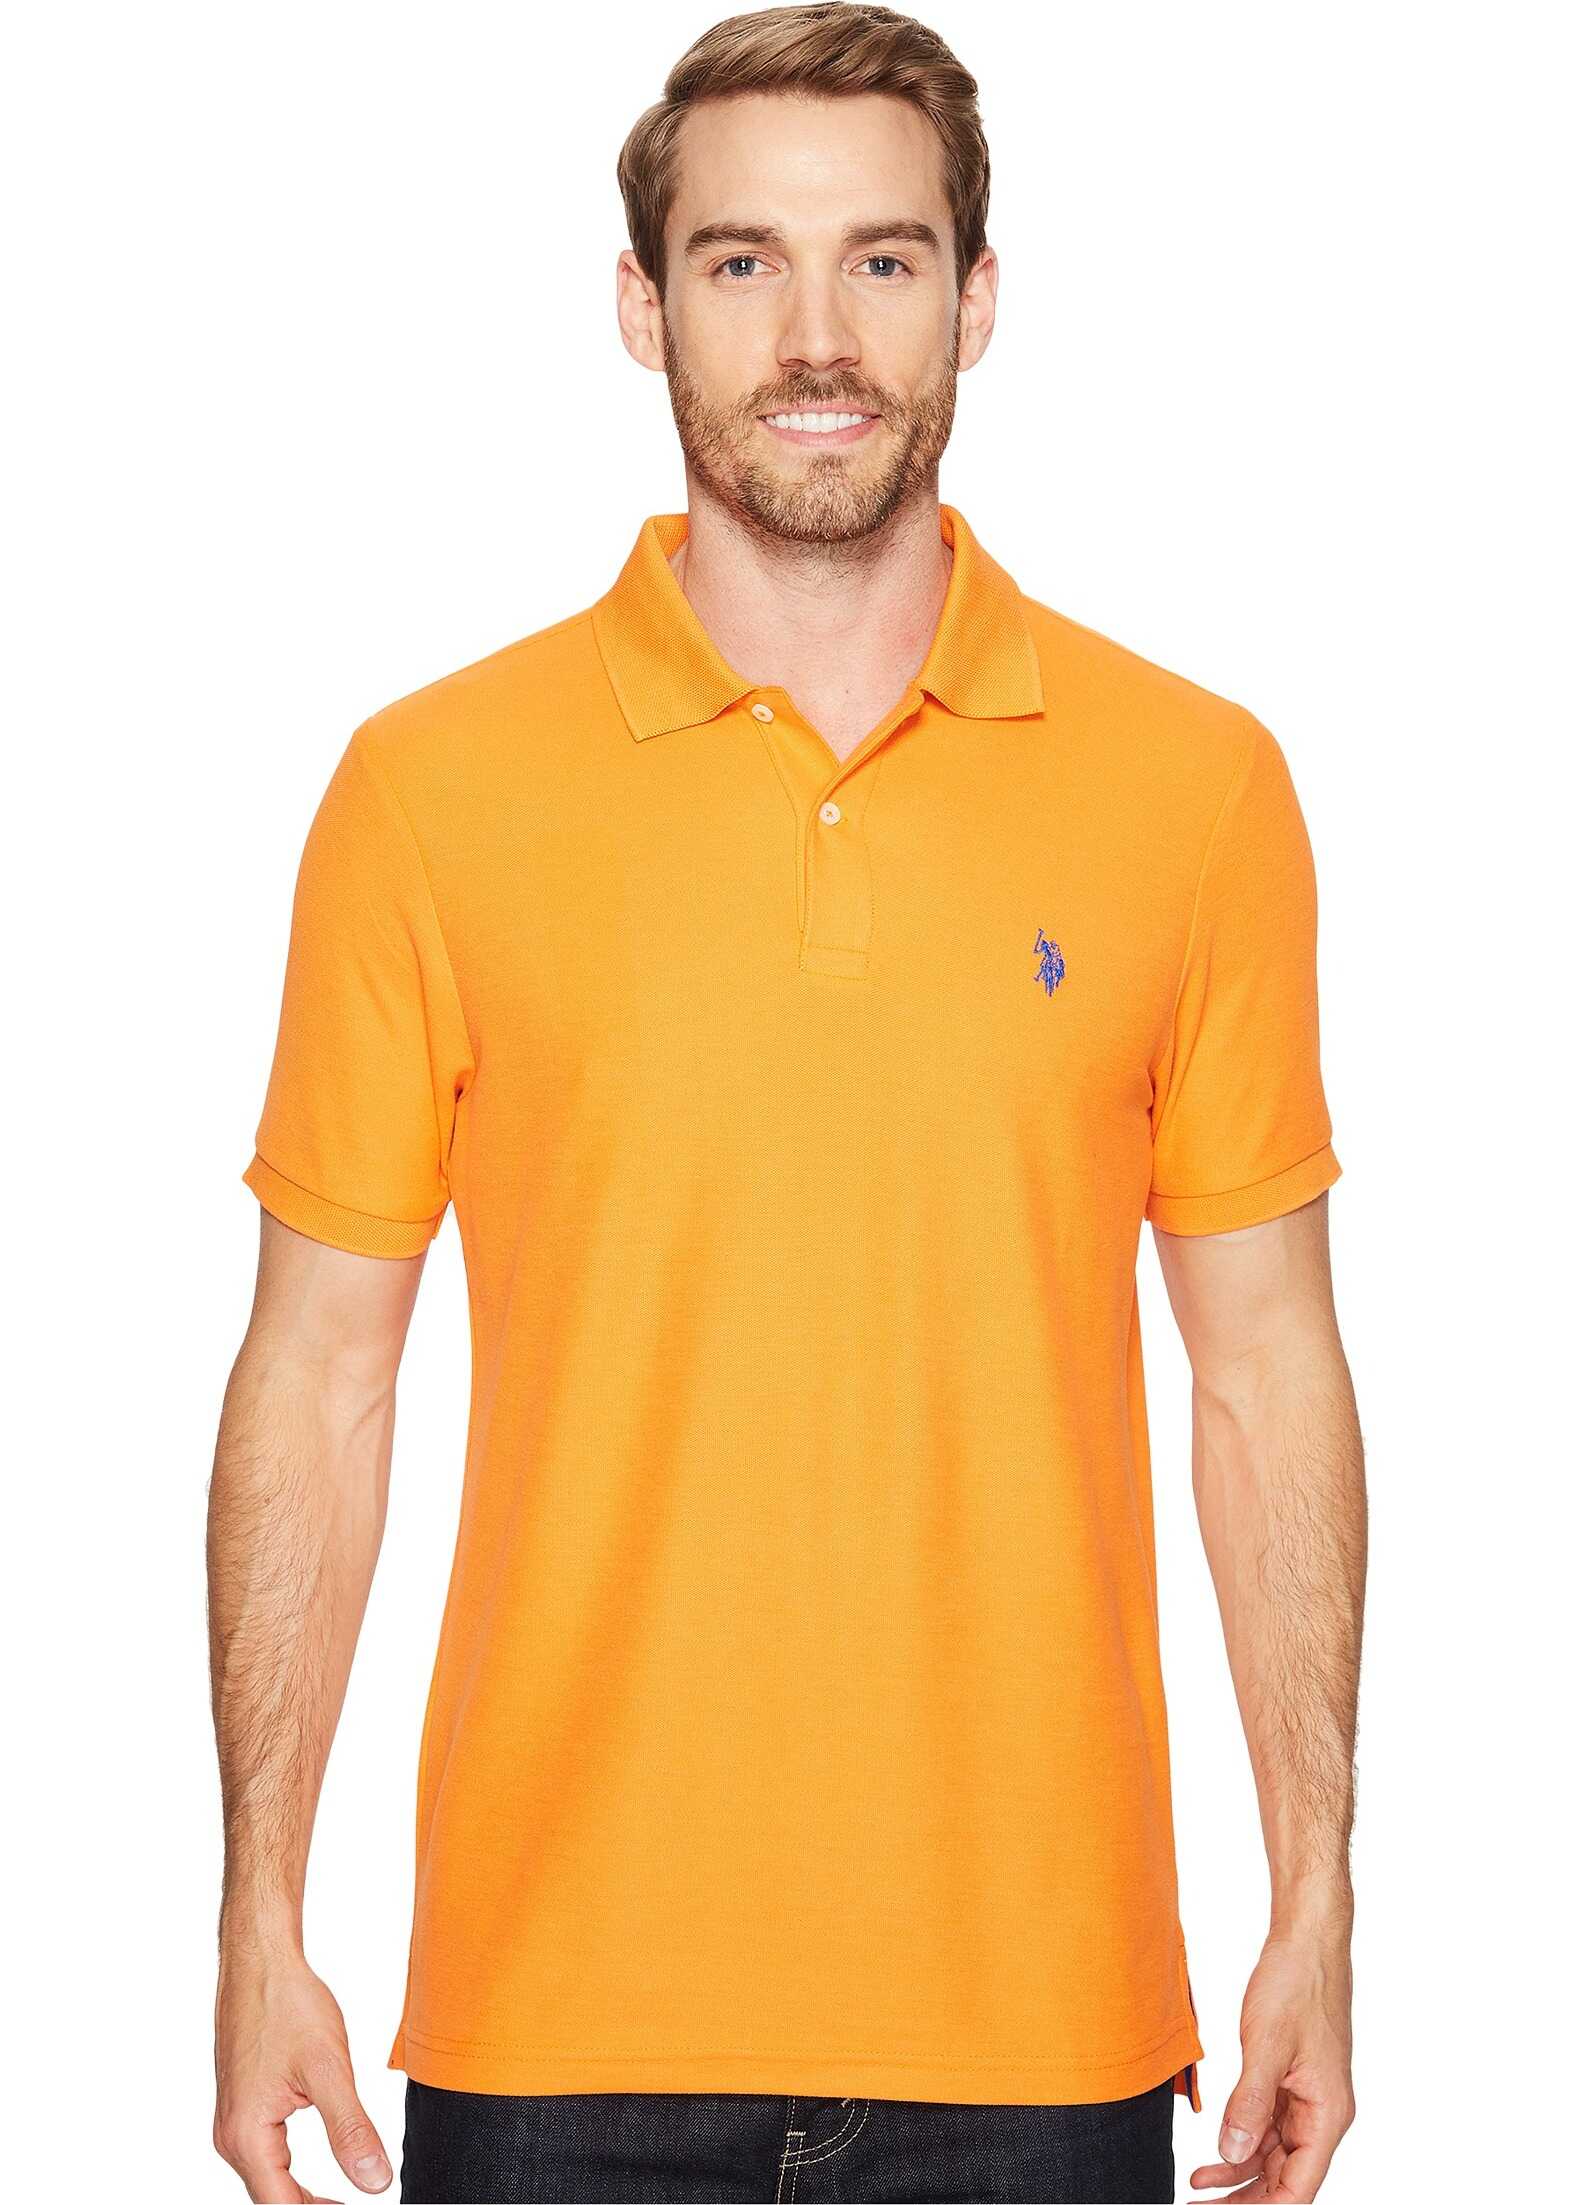 U.S. POLO ASSN. Ultimate Pique Polo Shirt Stadium Orange